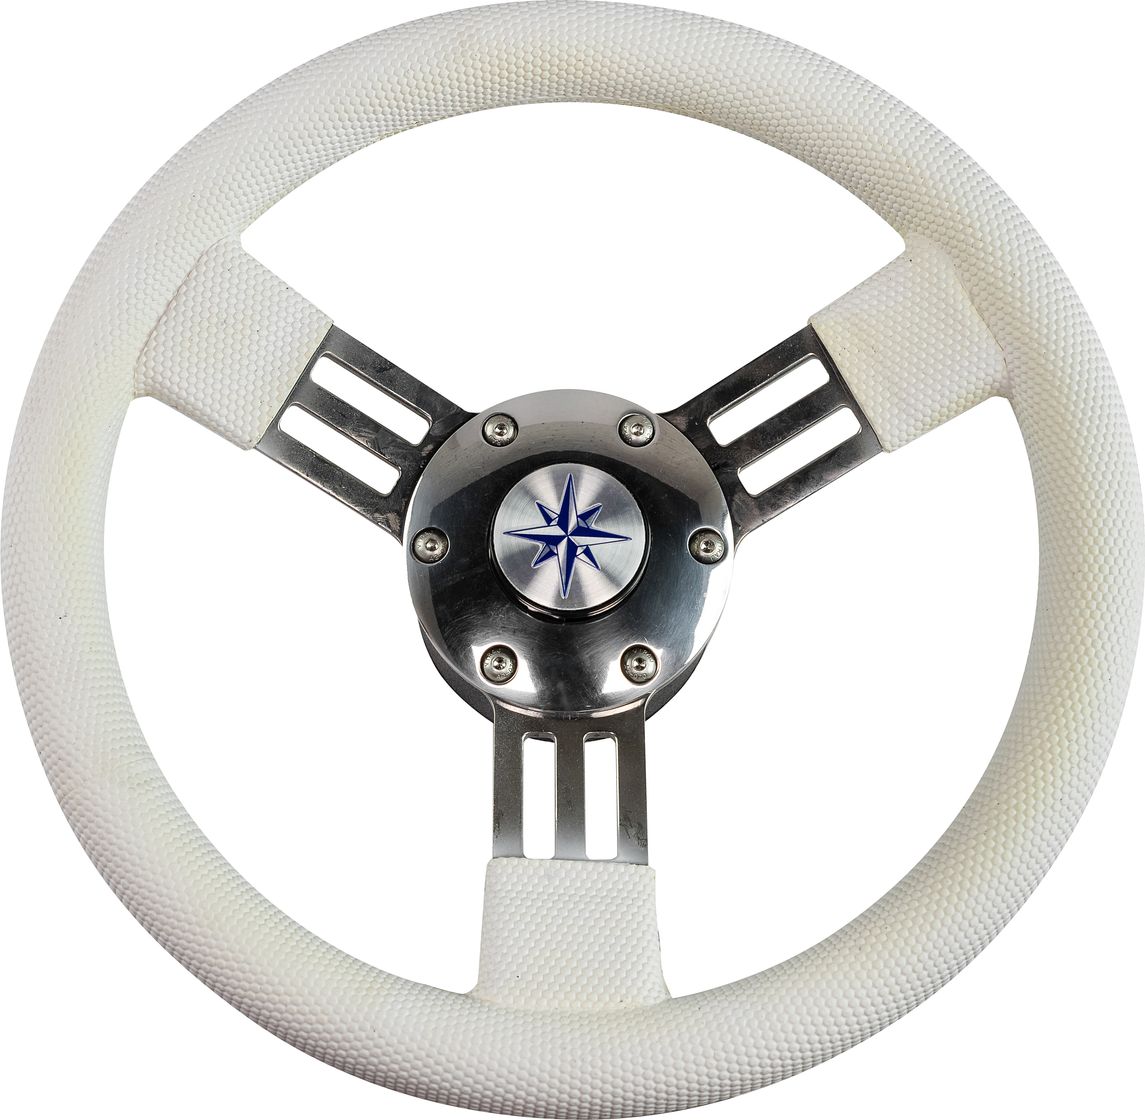 Рулевое колесо PEGASO обод белый, спицы серебряные д. 300 мм VN13327-08 рулевое колесо manta обод белый спицы серебряные д 355 мм vn70551 08